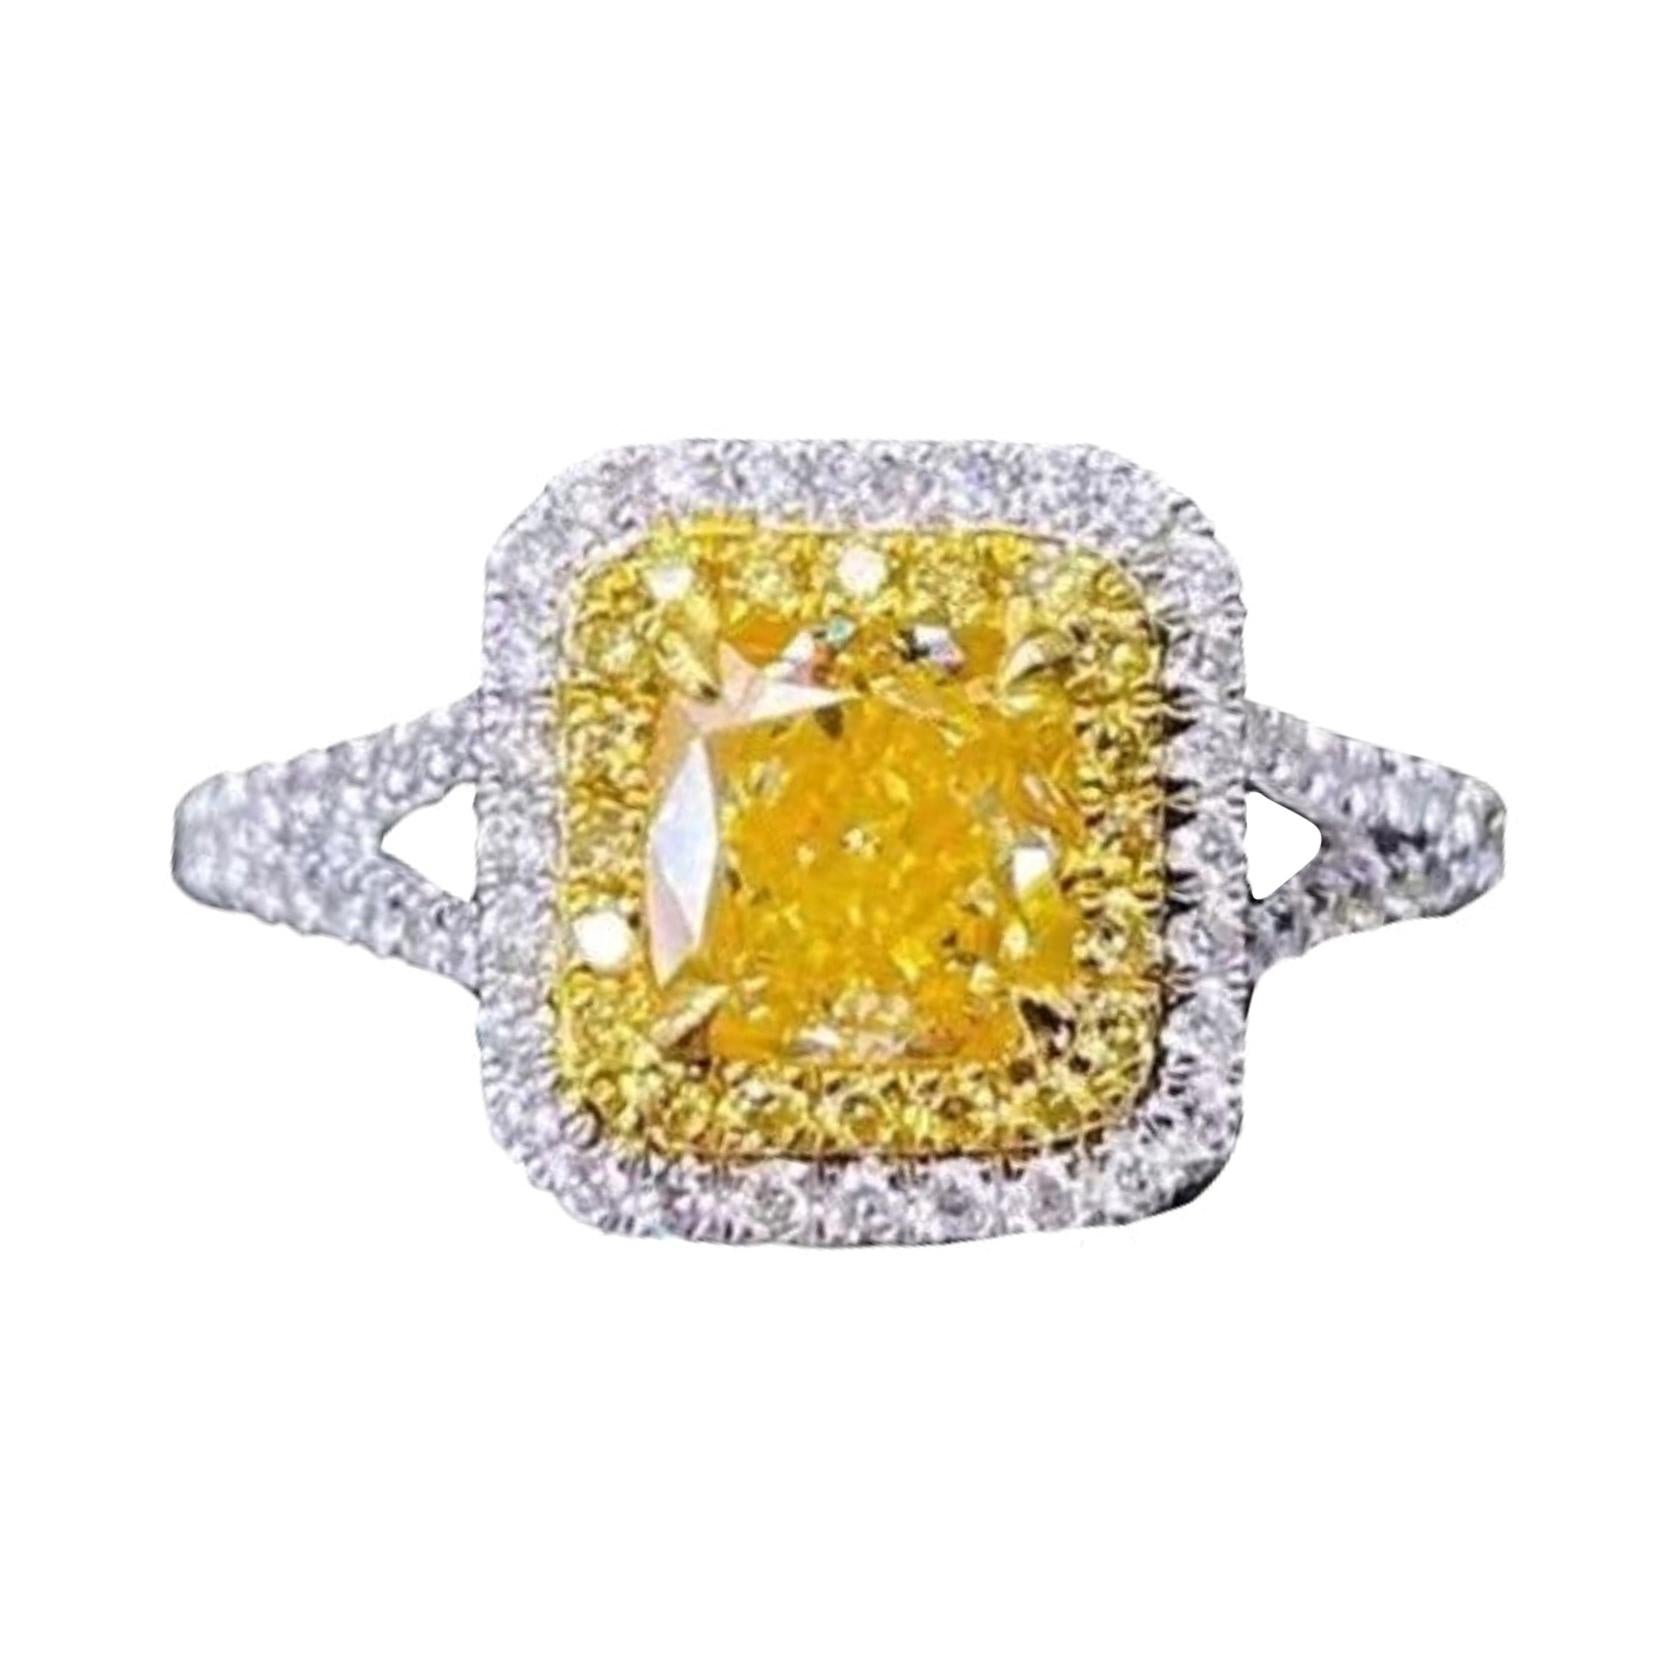 1 Carat Yellow Diamond Ring 18 Karat White Gold For Sale